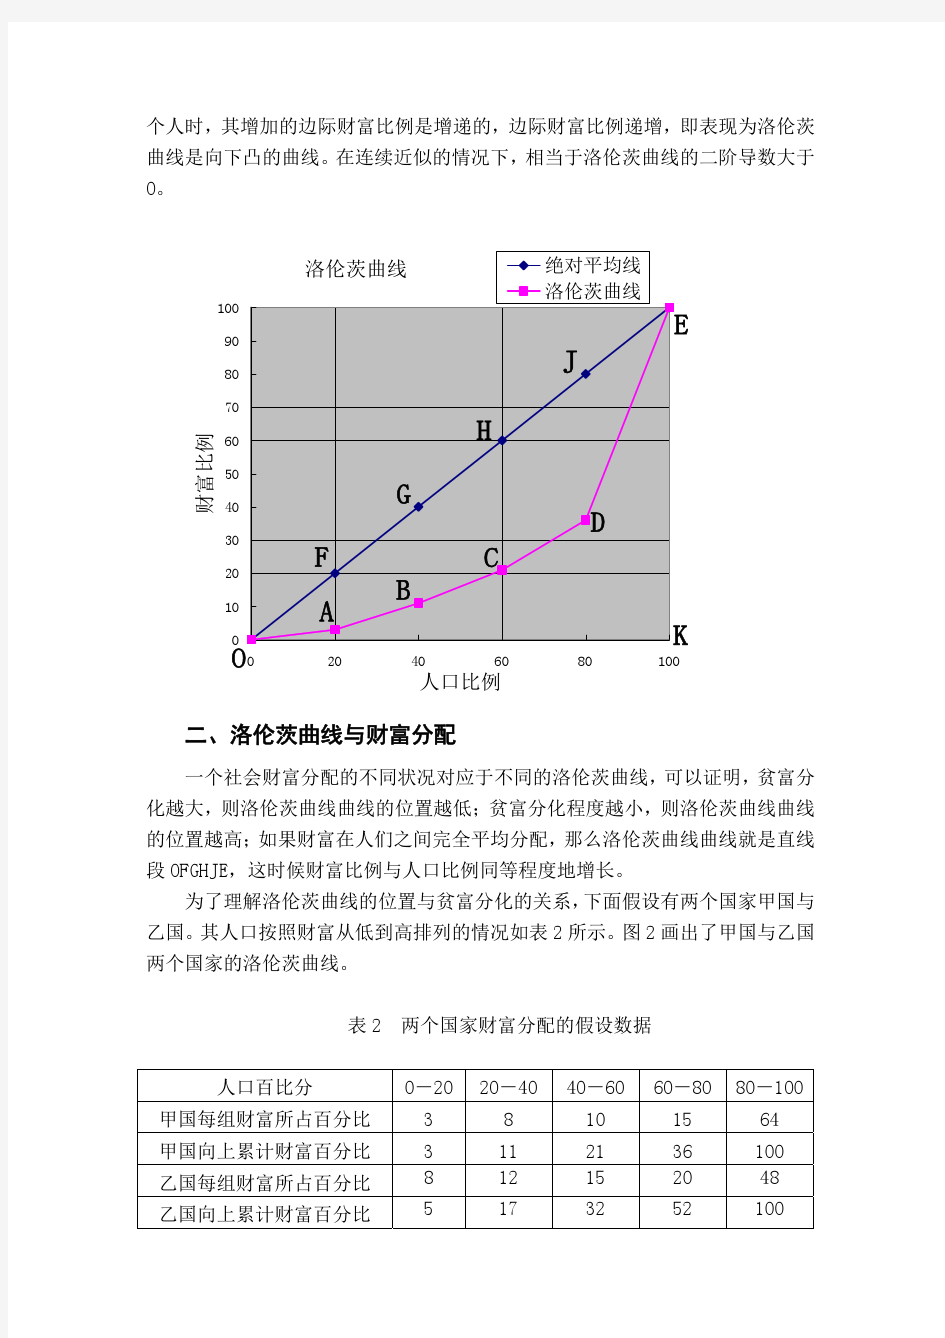 基尼系数的计算方法与中国的基尼系数估计